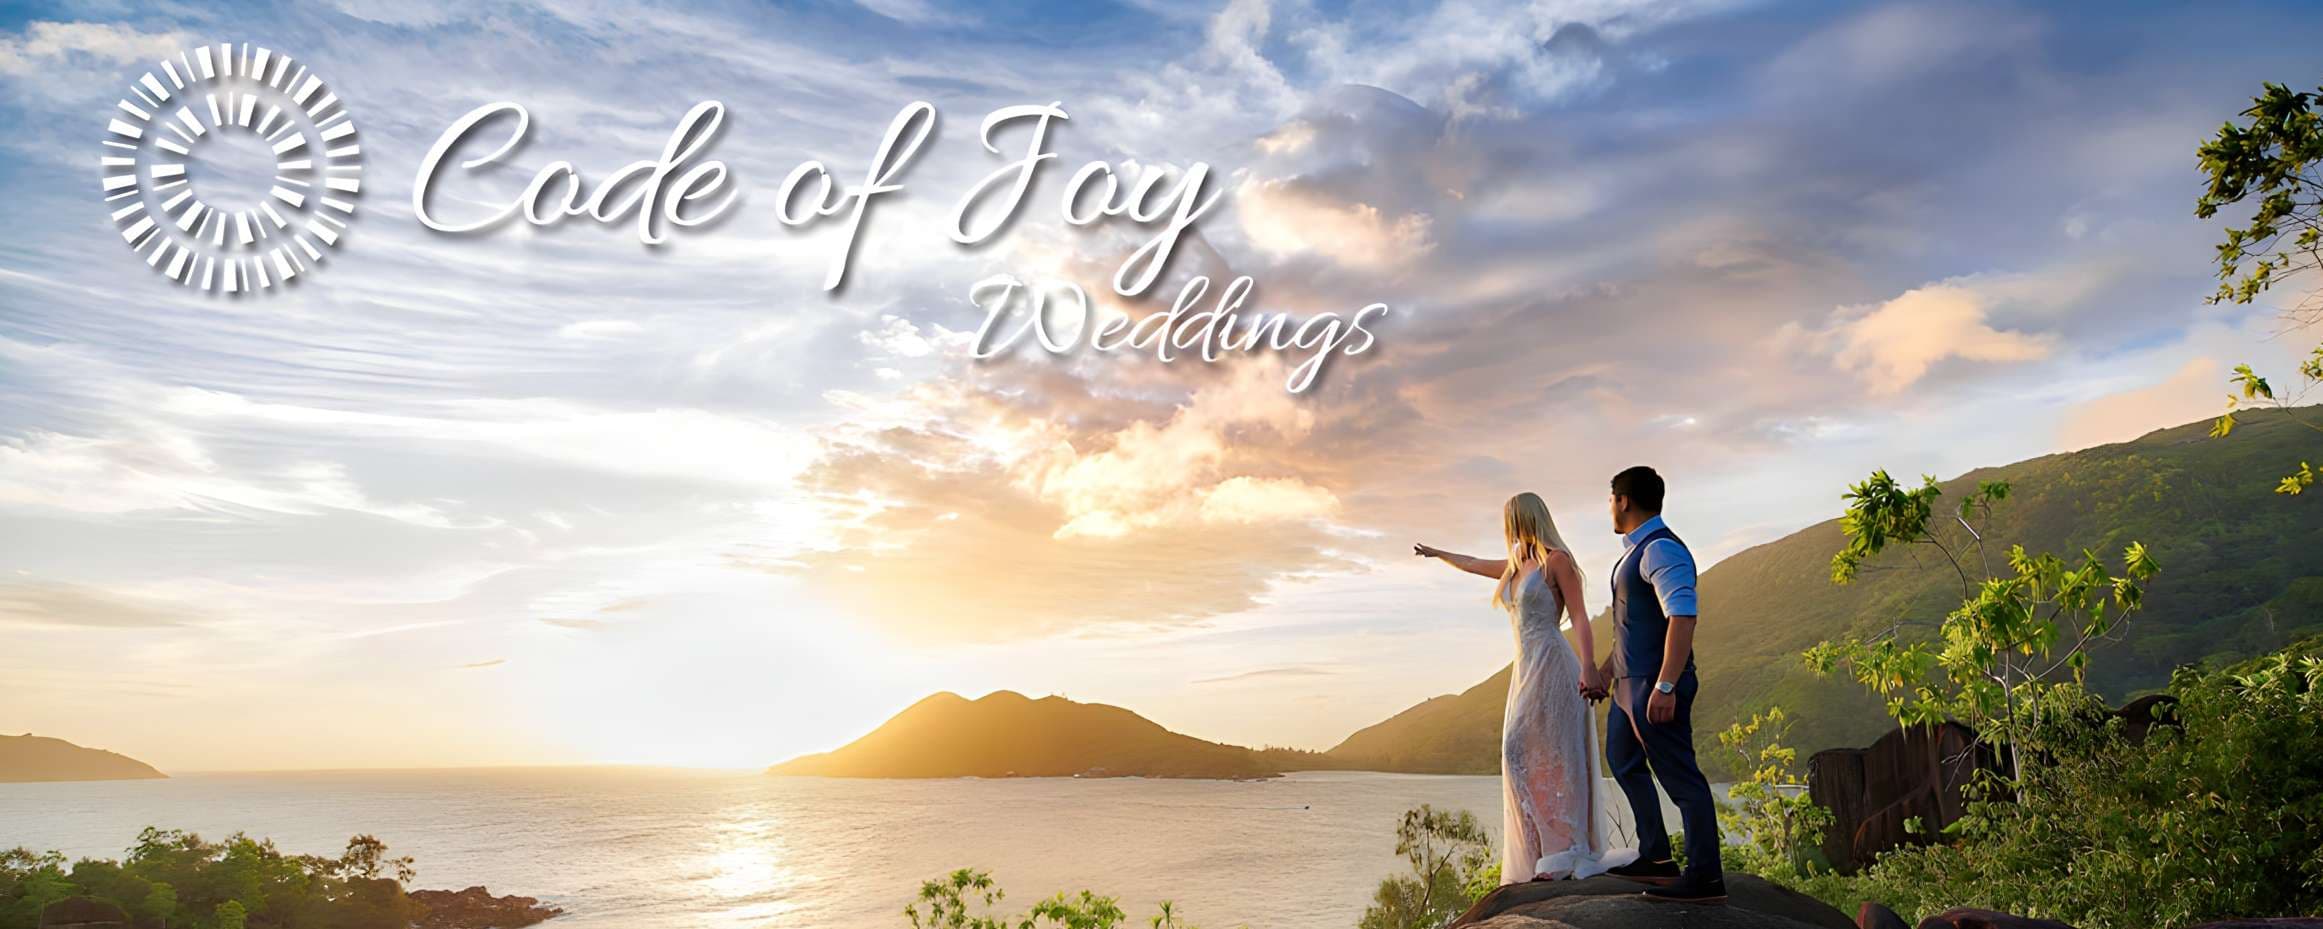 Code of Joy - Seychelles esküvők